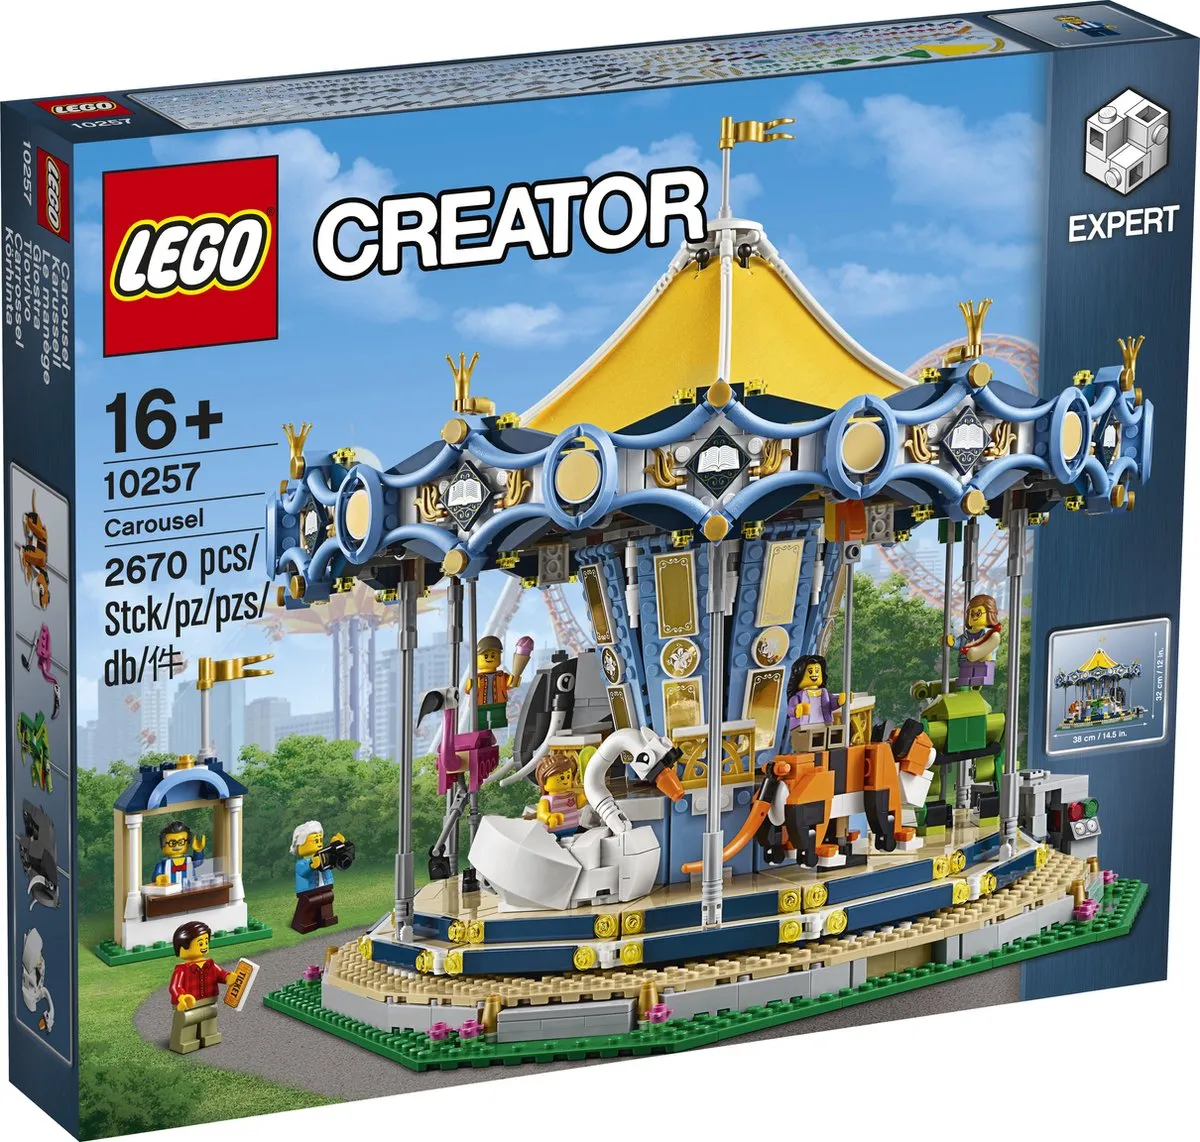 LEGO Creator Expert Carousel - 10257 speelgoed